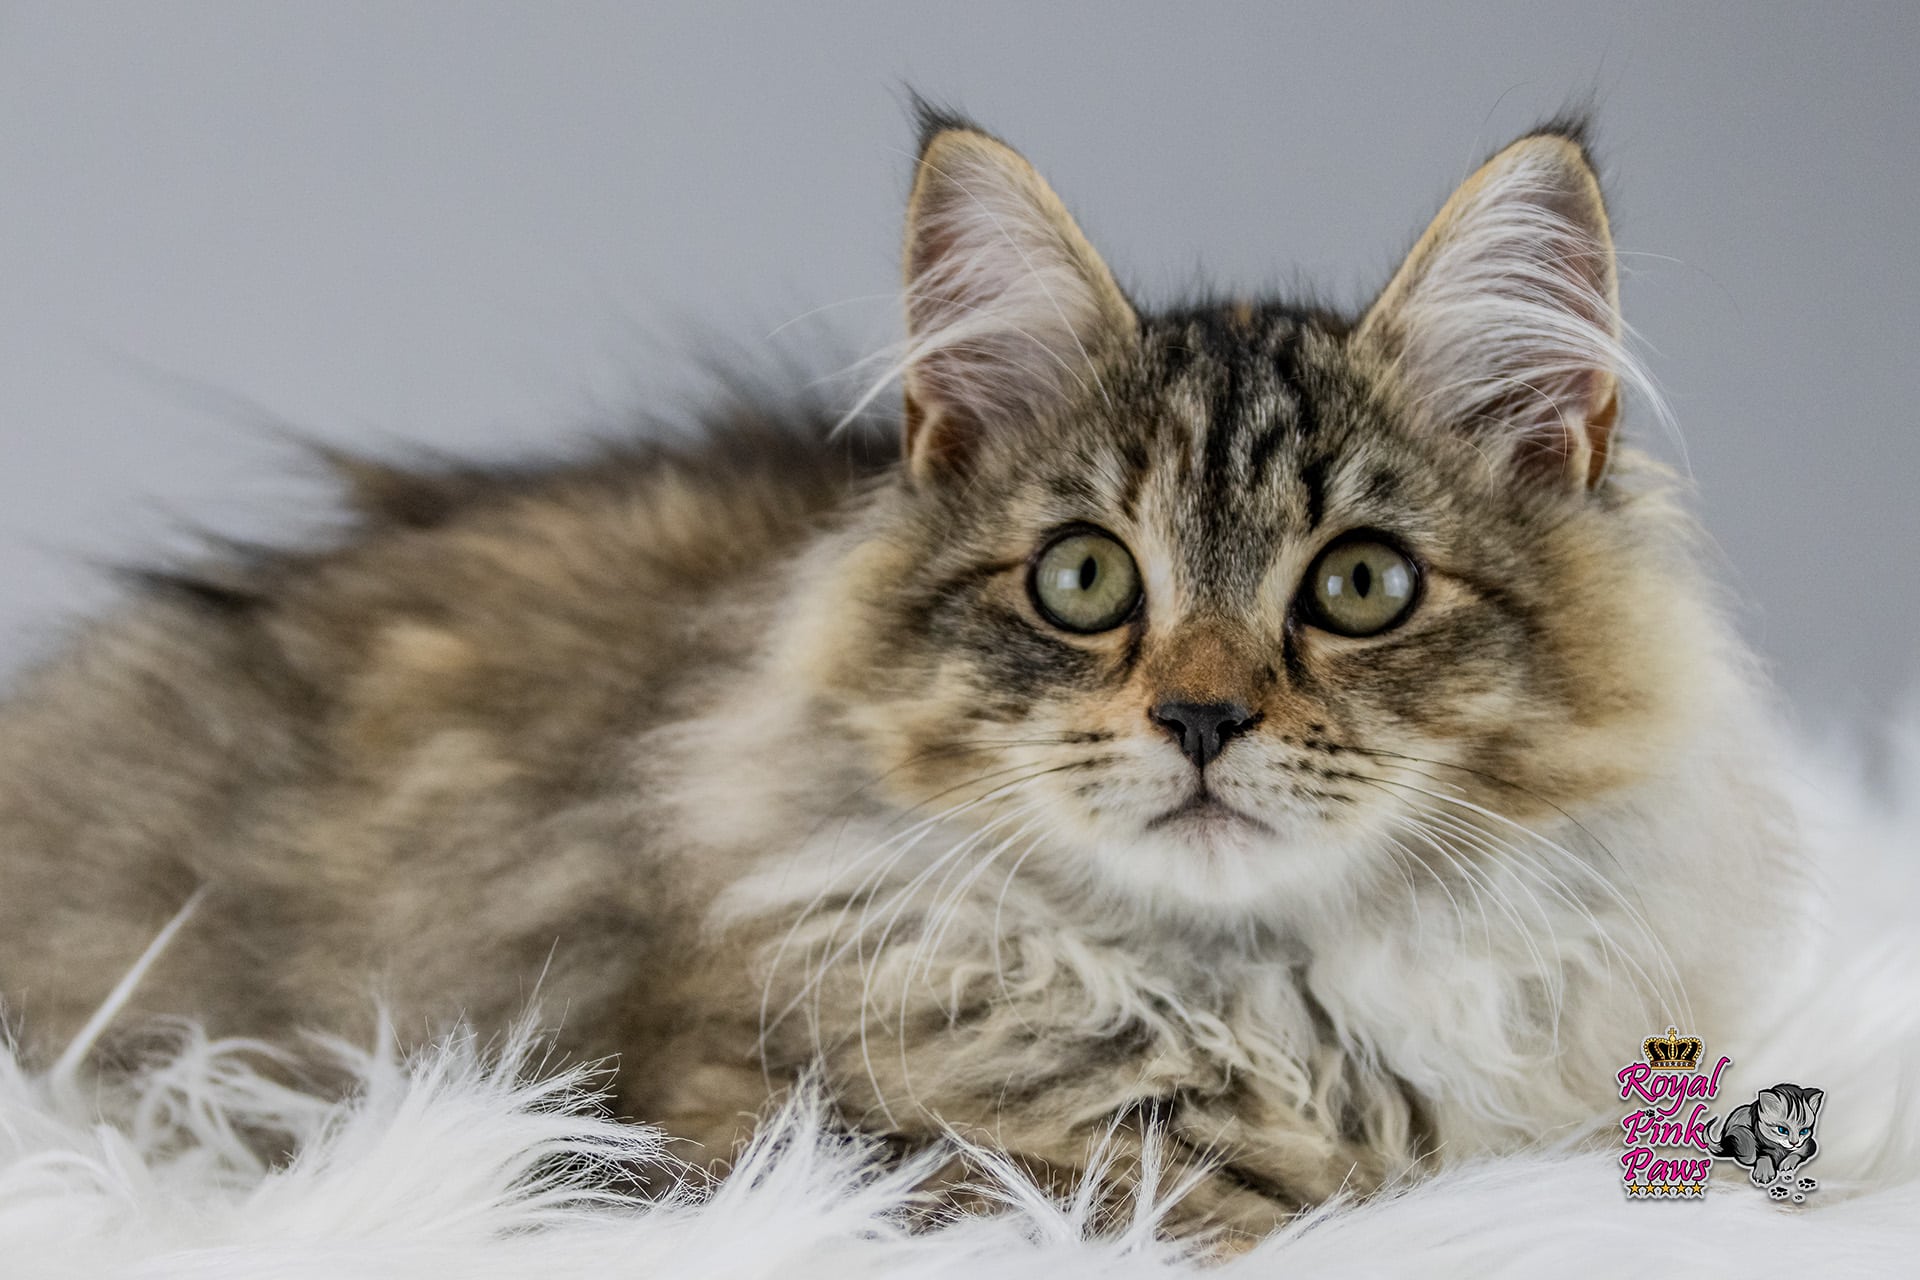 Sibirische Katze - CH Siberian Sprite Jamaica